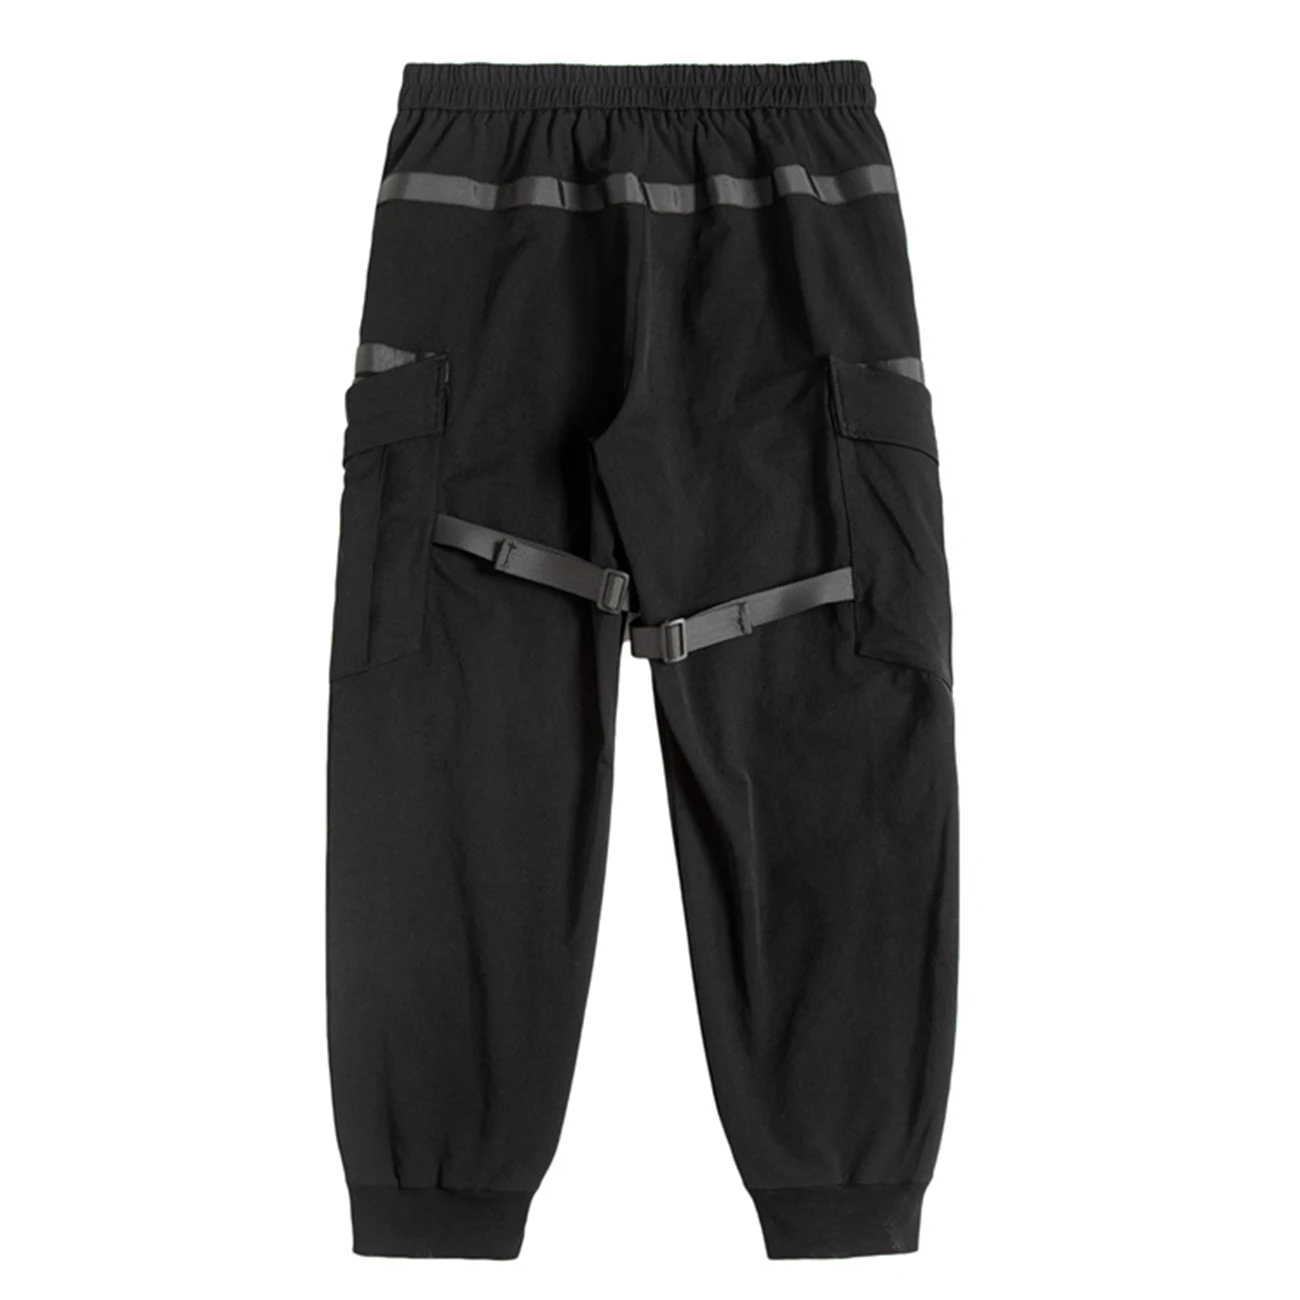 11 BYBB ESCURO 2020 Streetwear Multi-Bolsos Fitas de Carga Calça de Homem Hip Hop Tático Função Calças de Elástico Jogger Homens Calças Imagem 5